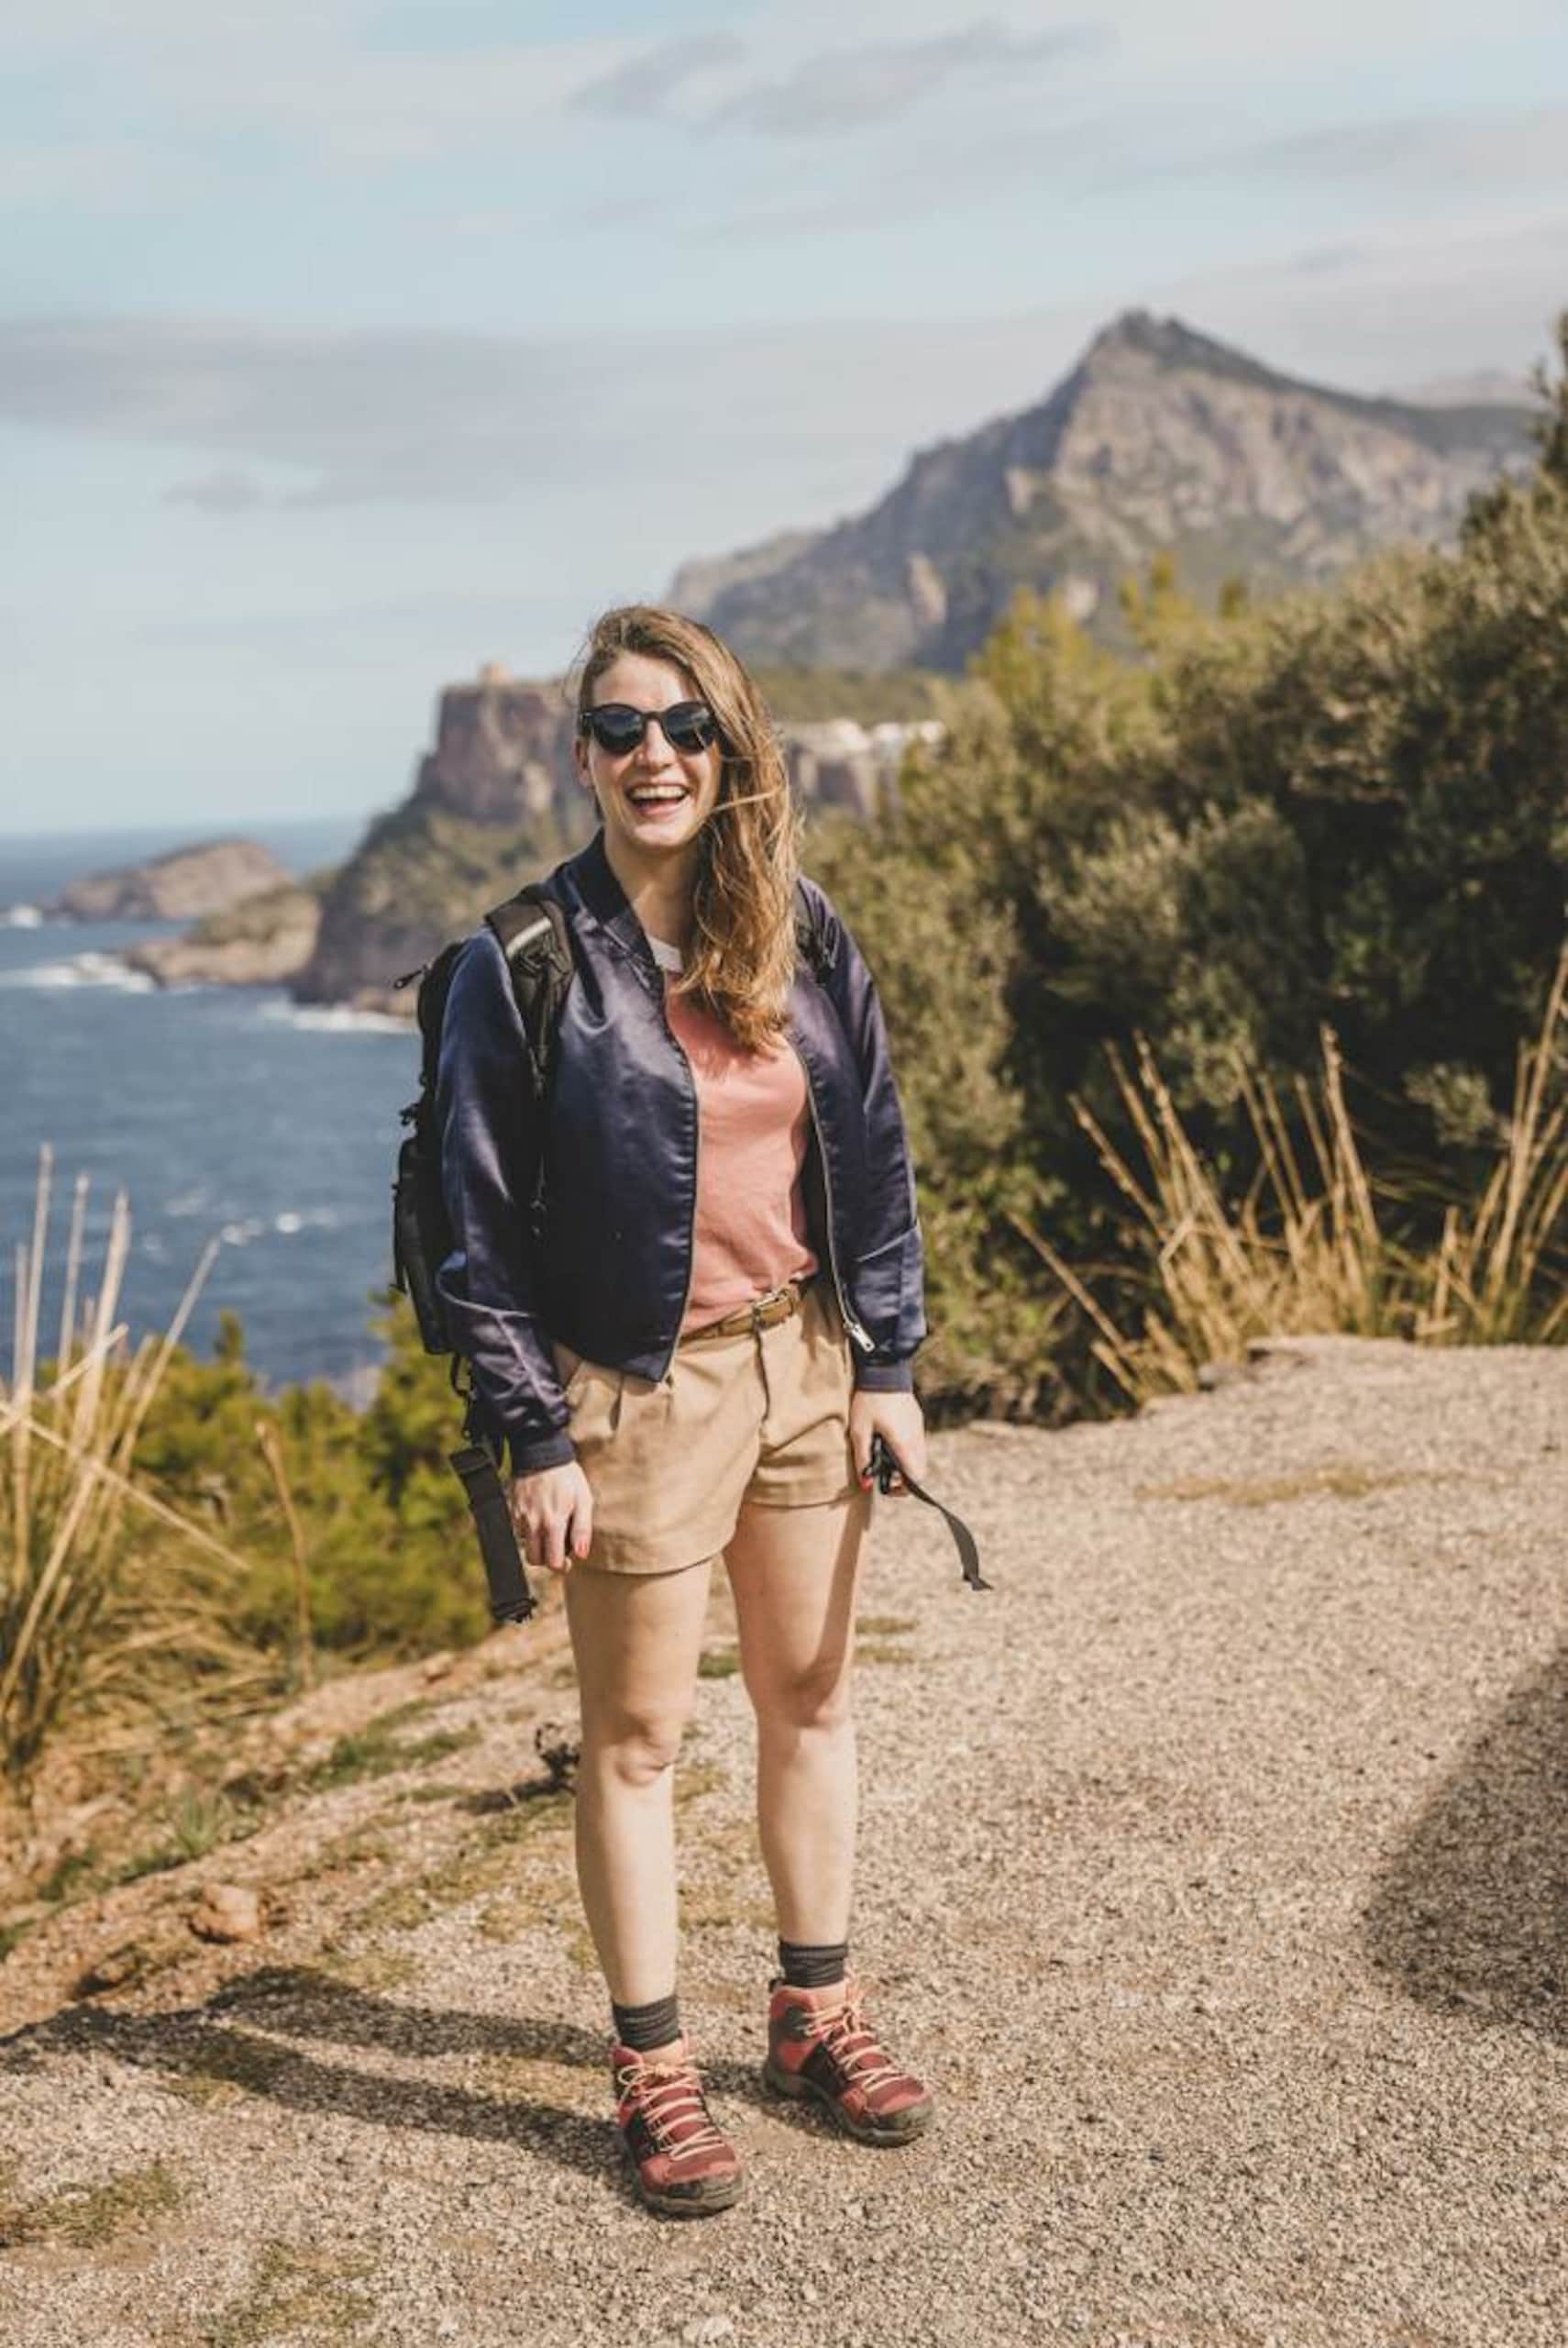 Marie beim Wandern auf Mallorca